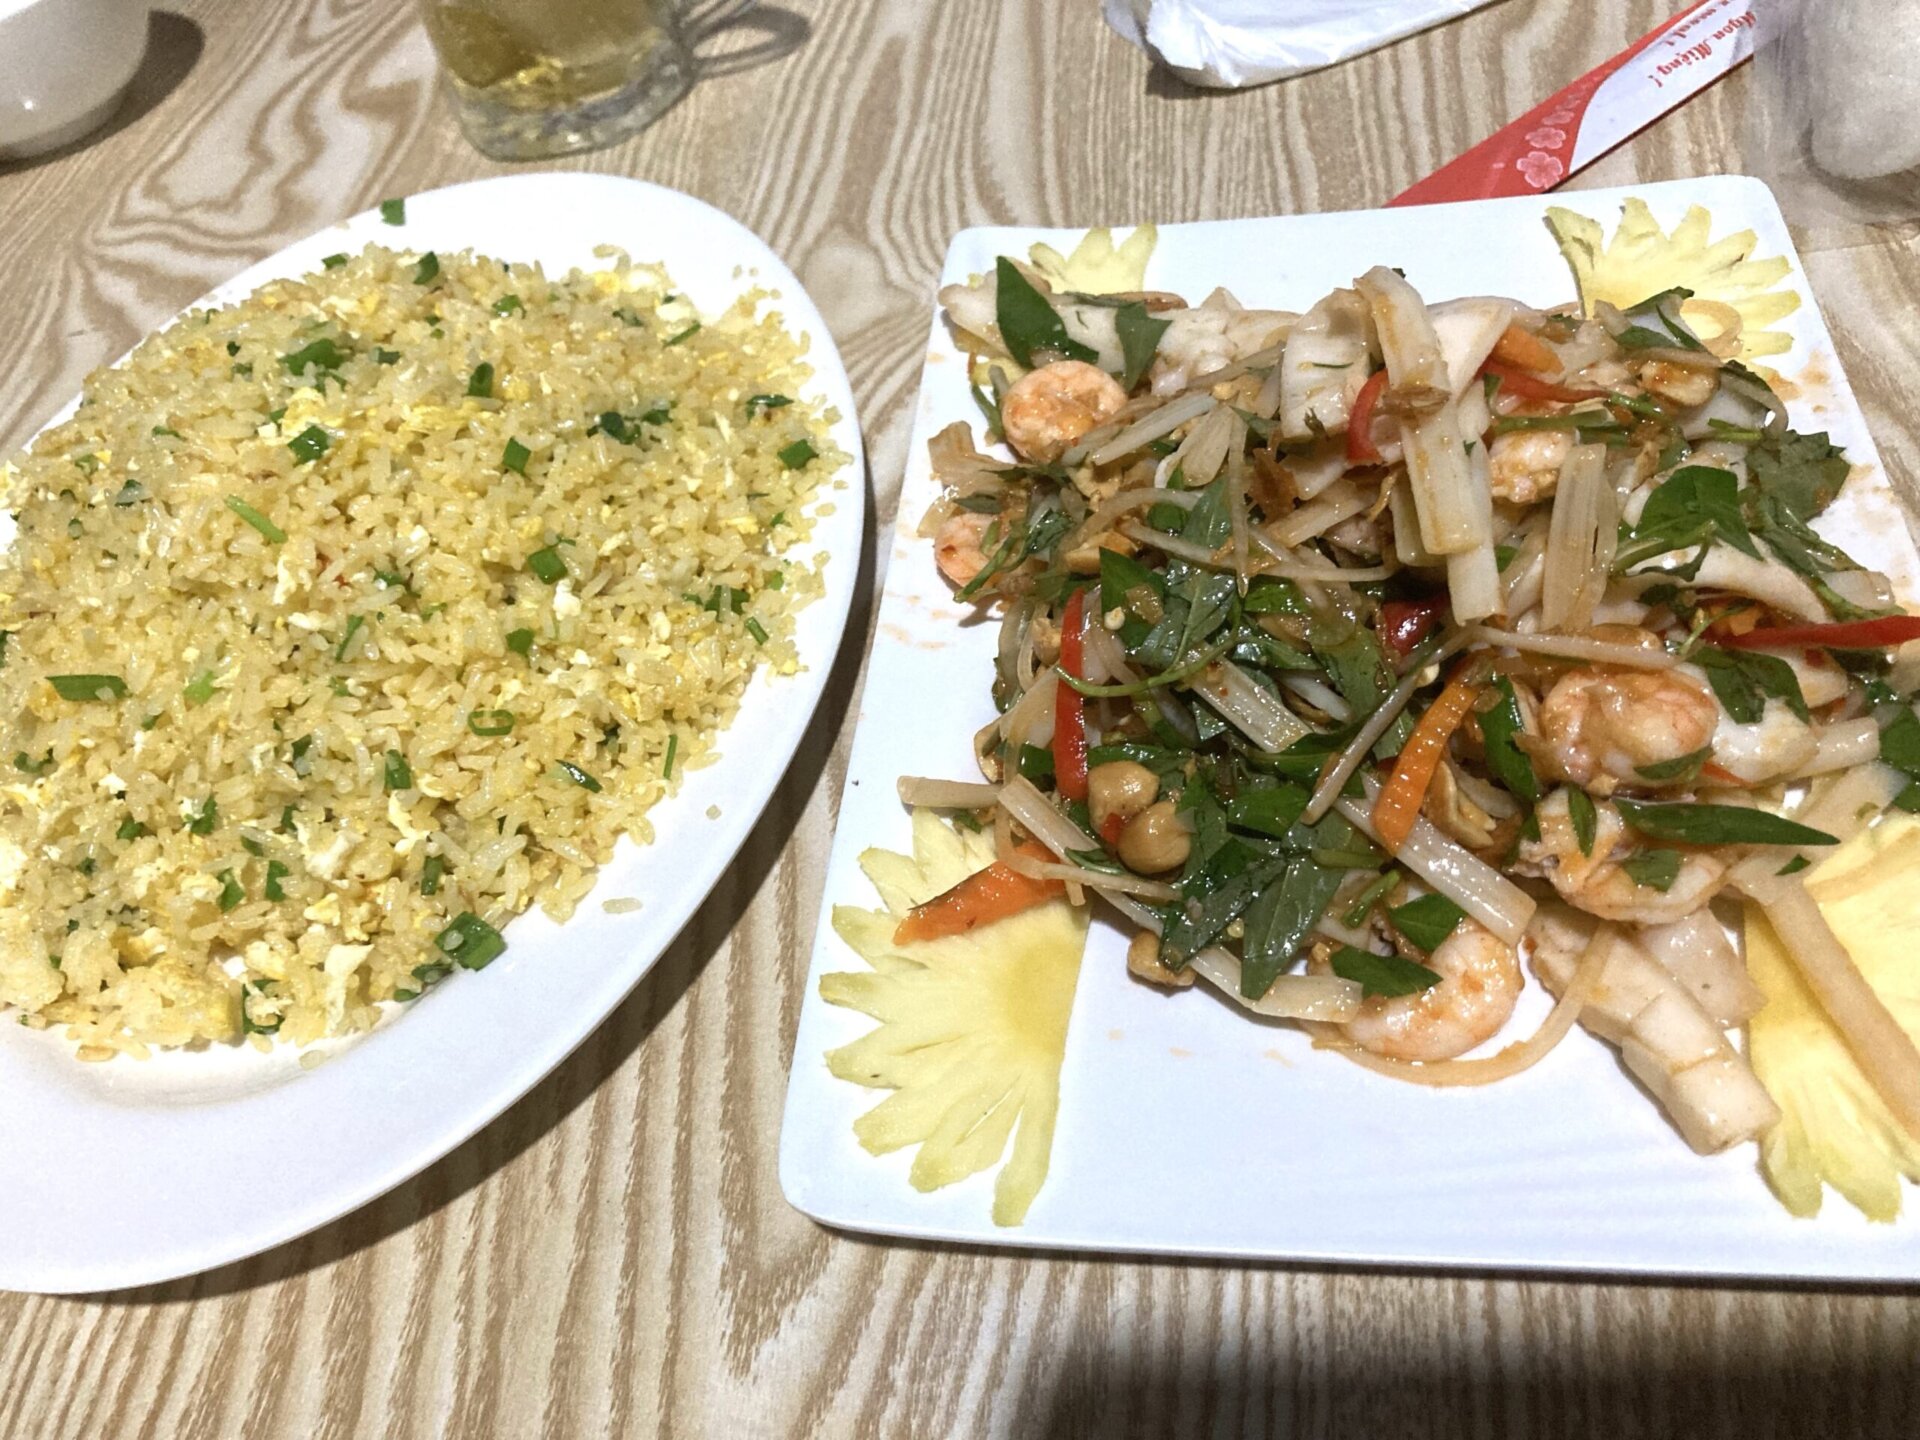 チャーハン／Cơm chiên trứng（左）
海鮮の和え物／Gỏi hải sản（右）